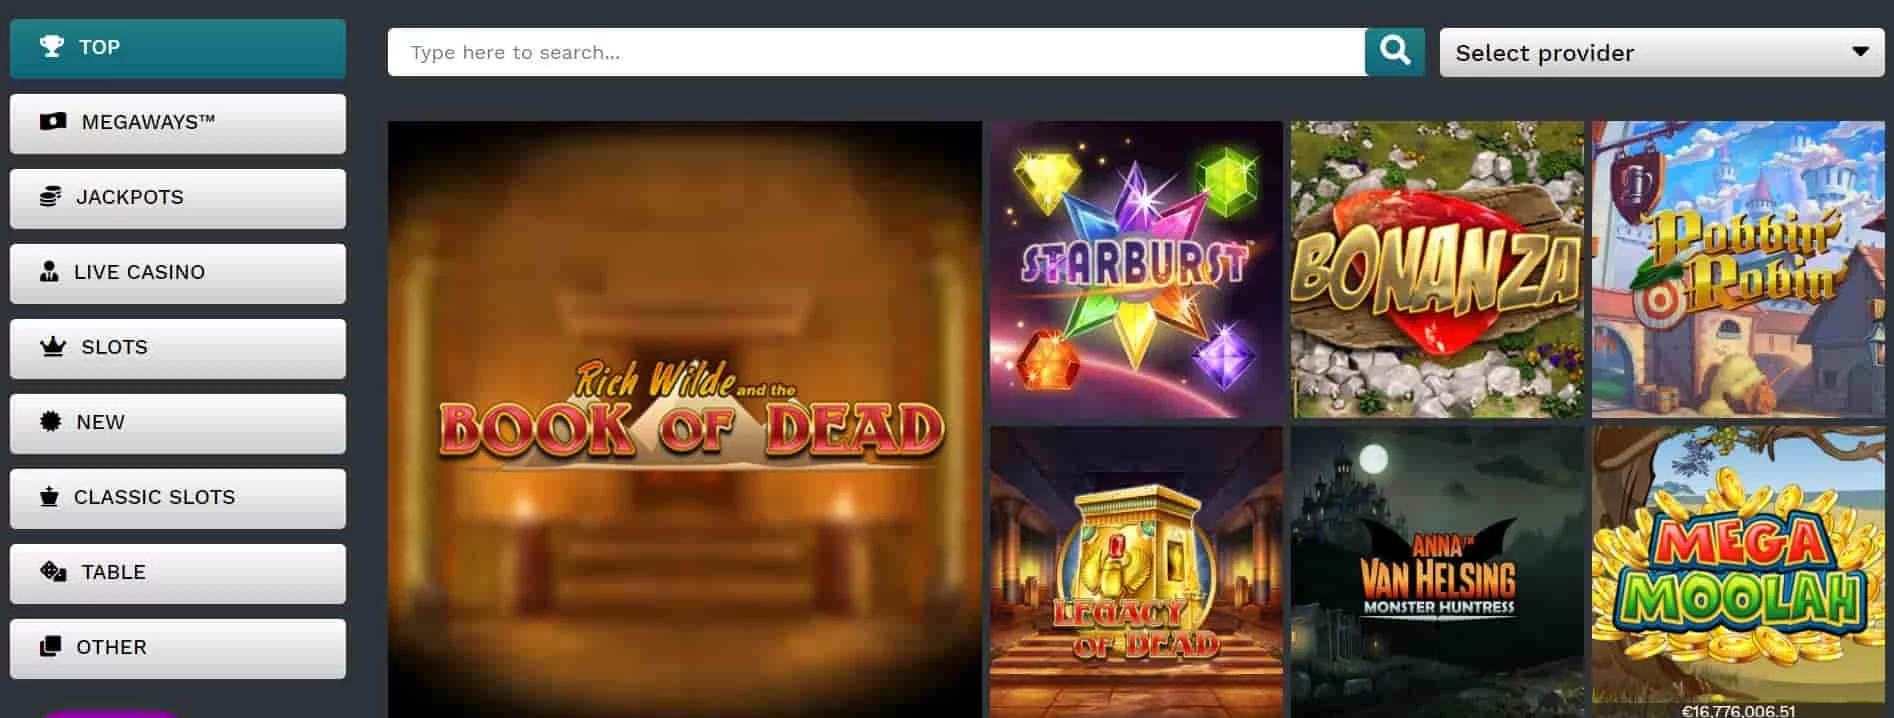 21prive casino new games-min